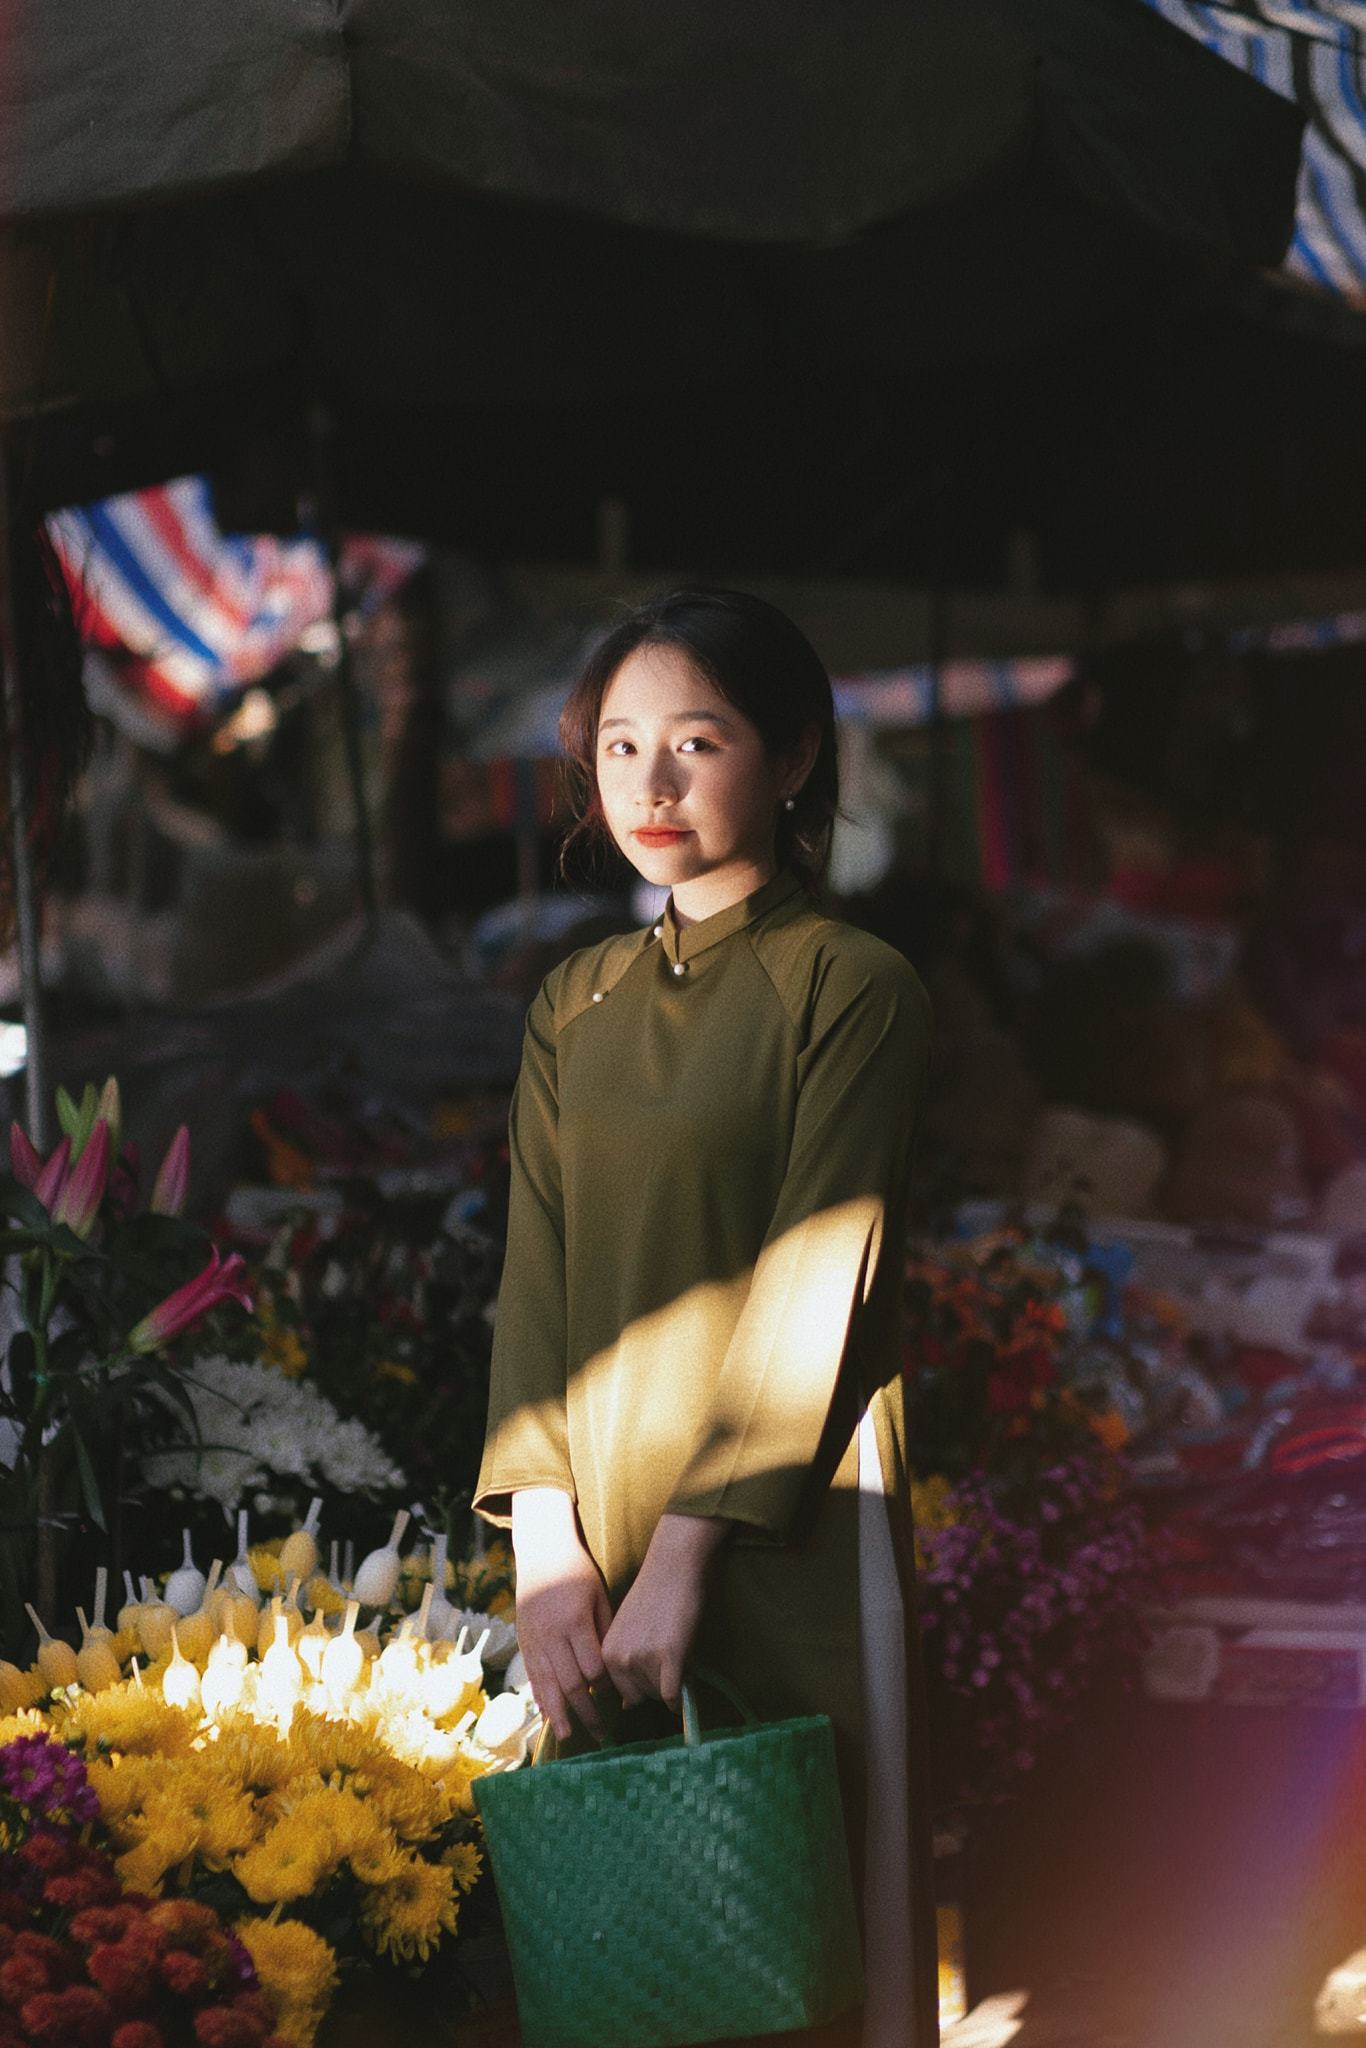 Đến với chợ Tết truyền thống áo dài vintage, bạn sẽ được trải nghiệm không khí Tết cổ điển ngập tràn và cảm nhận vẻ đẹp đầy sức sống từ các bộ trang phục đời cũ. Hãy khám phá các hình ảnh đầy màu sắc và cuốn hút này để cảm nhận lại Tết Việt Nam xưa.